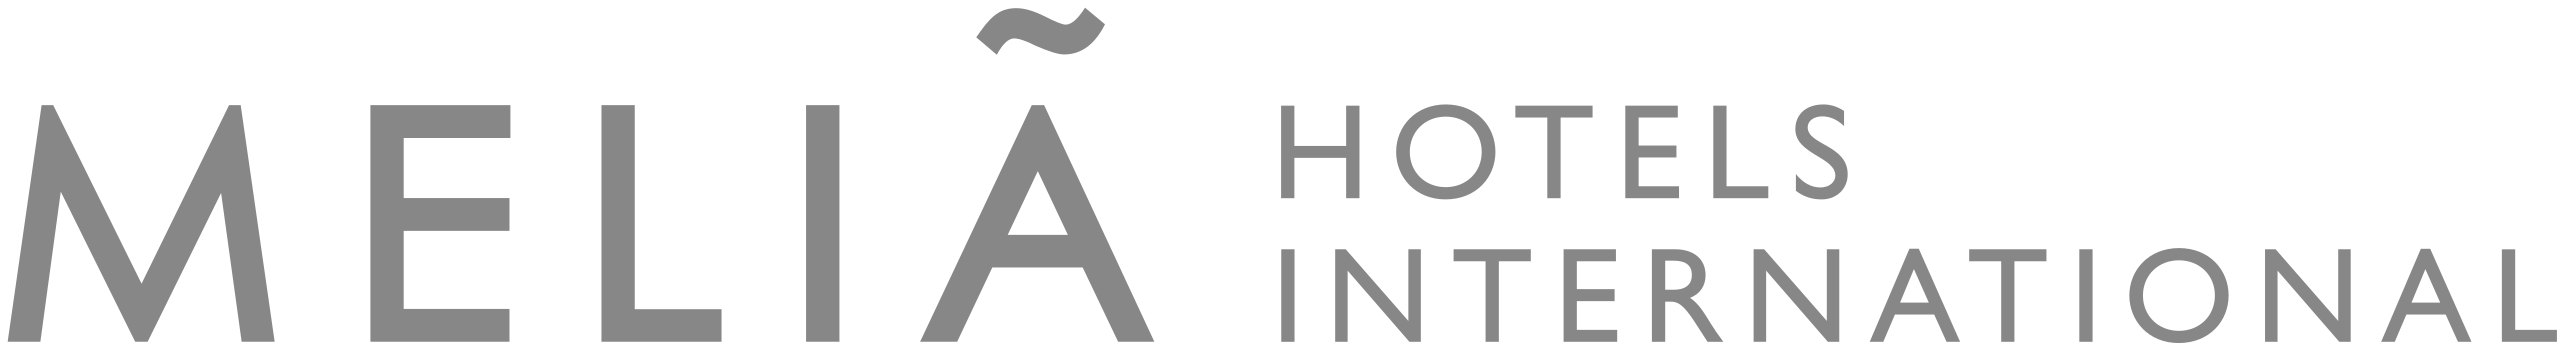 2560px-Meliá_Hotels_International_logo.svg